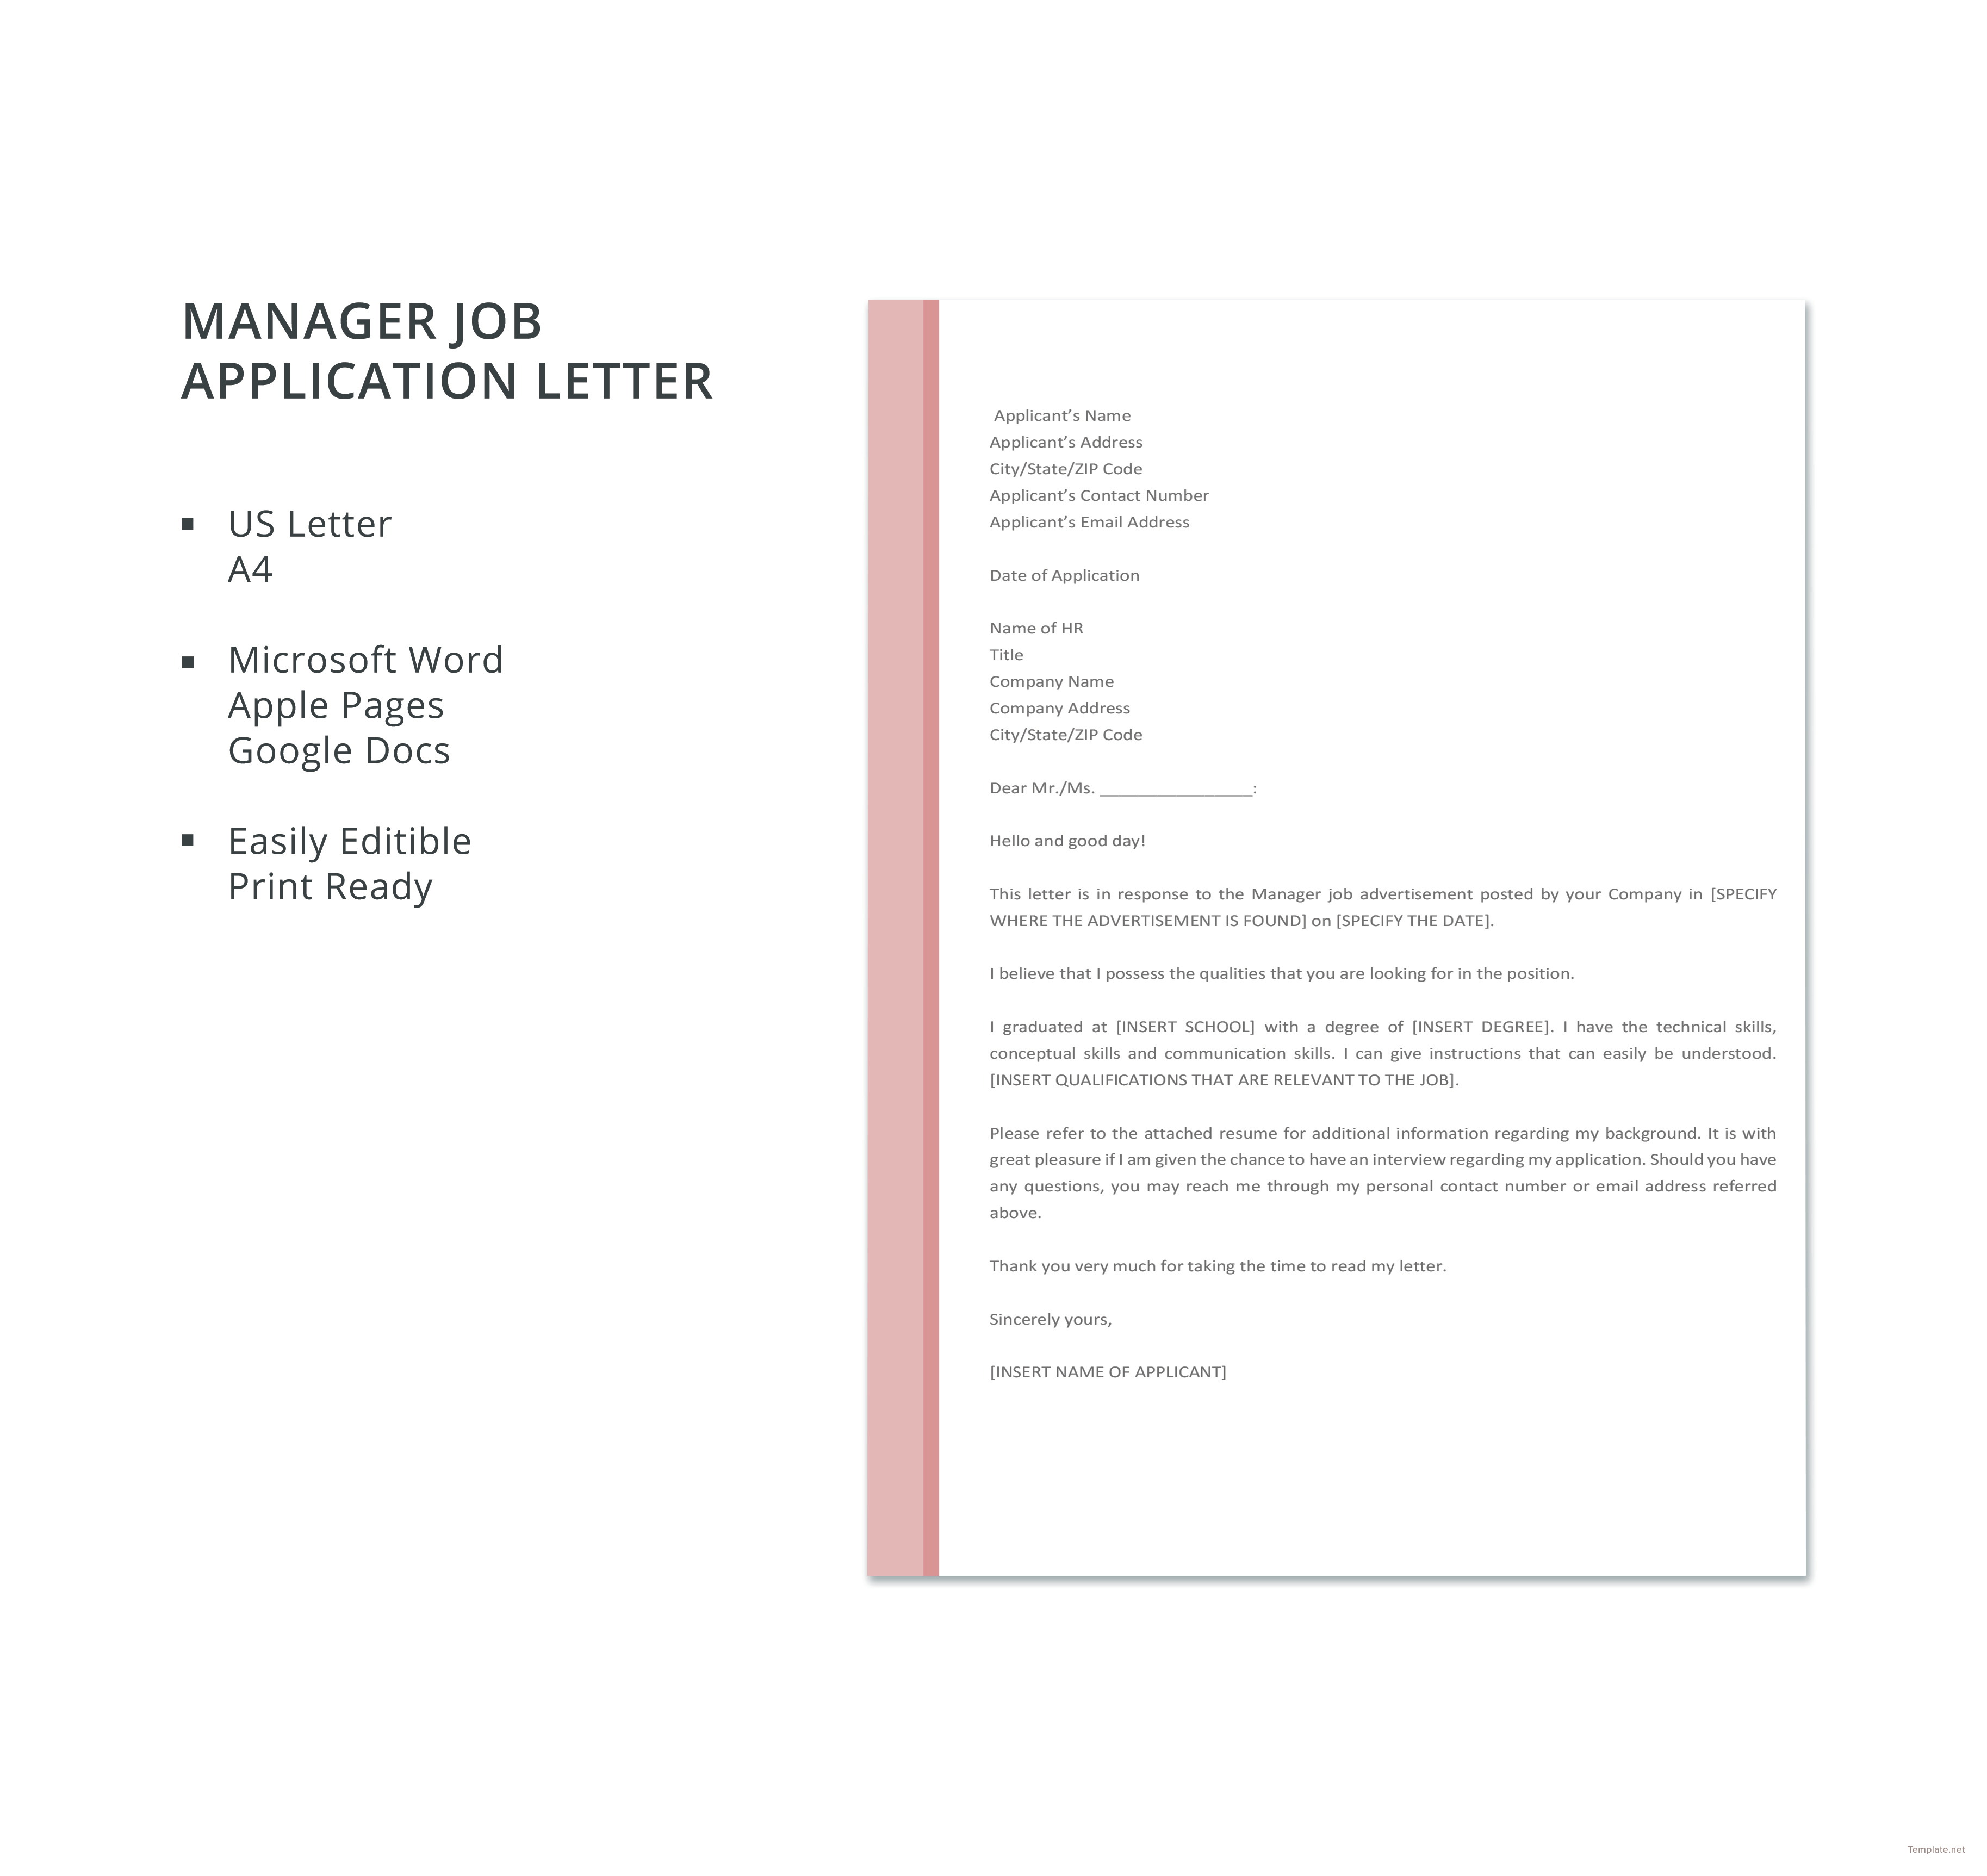 Application letter for management job